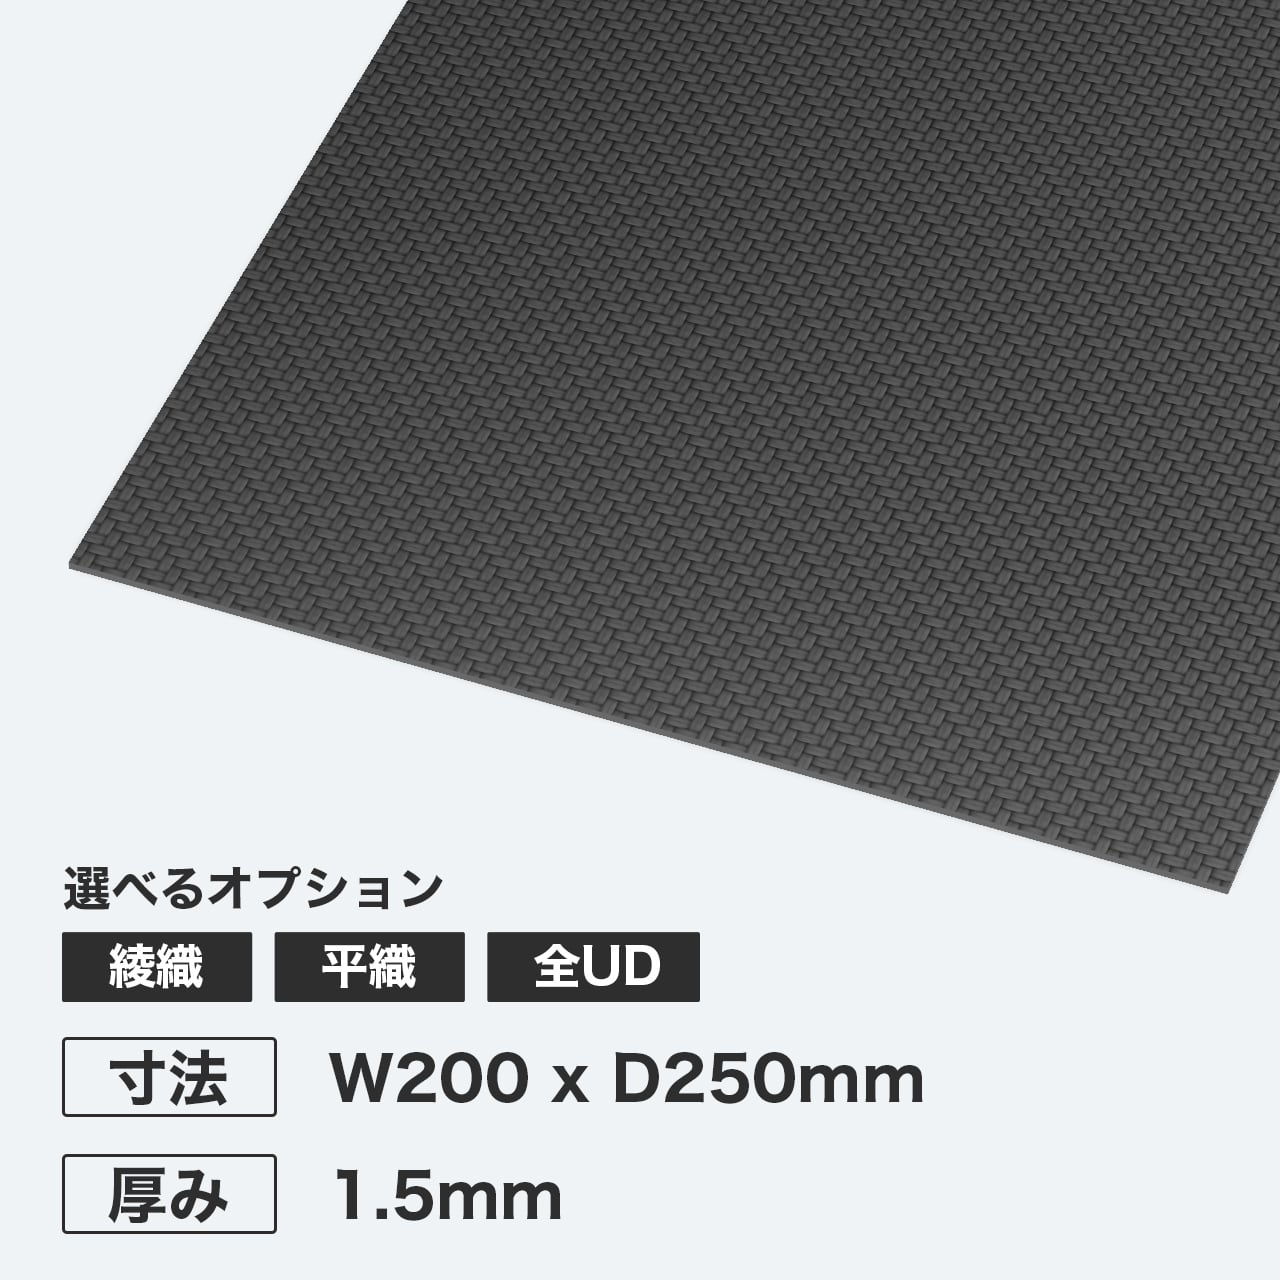 カーボン板 W200 x D250mm 厚み1.5mm